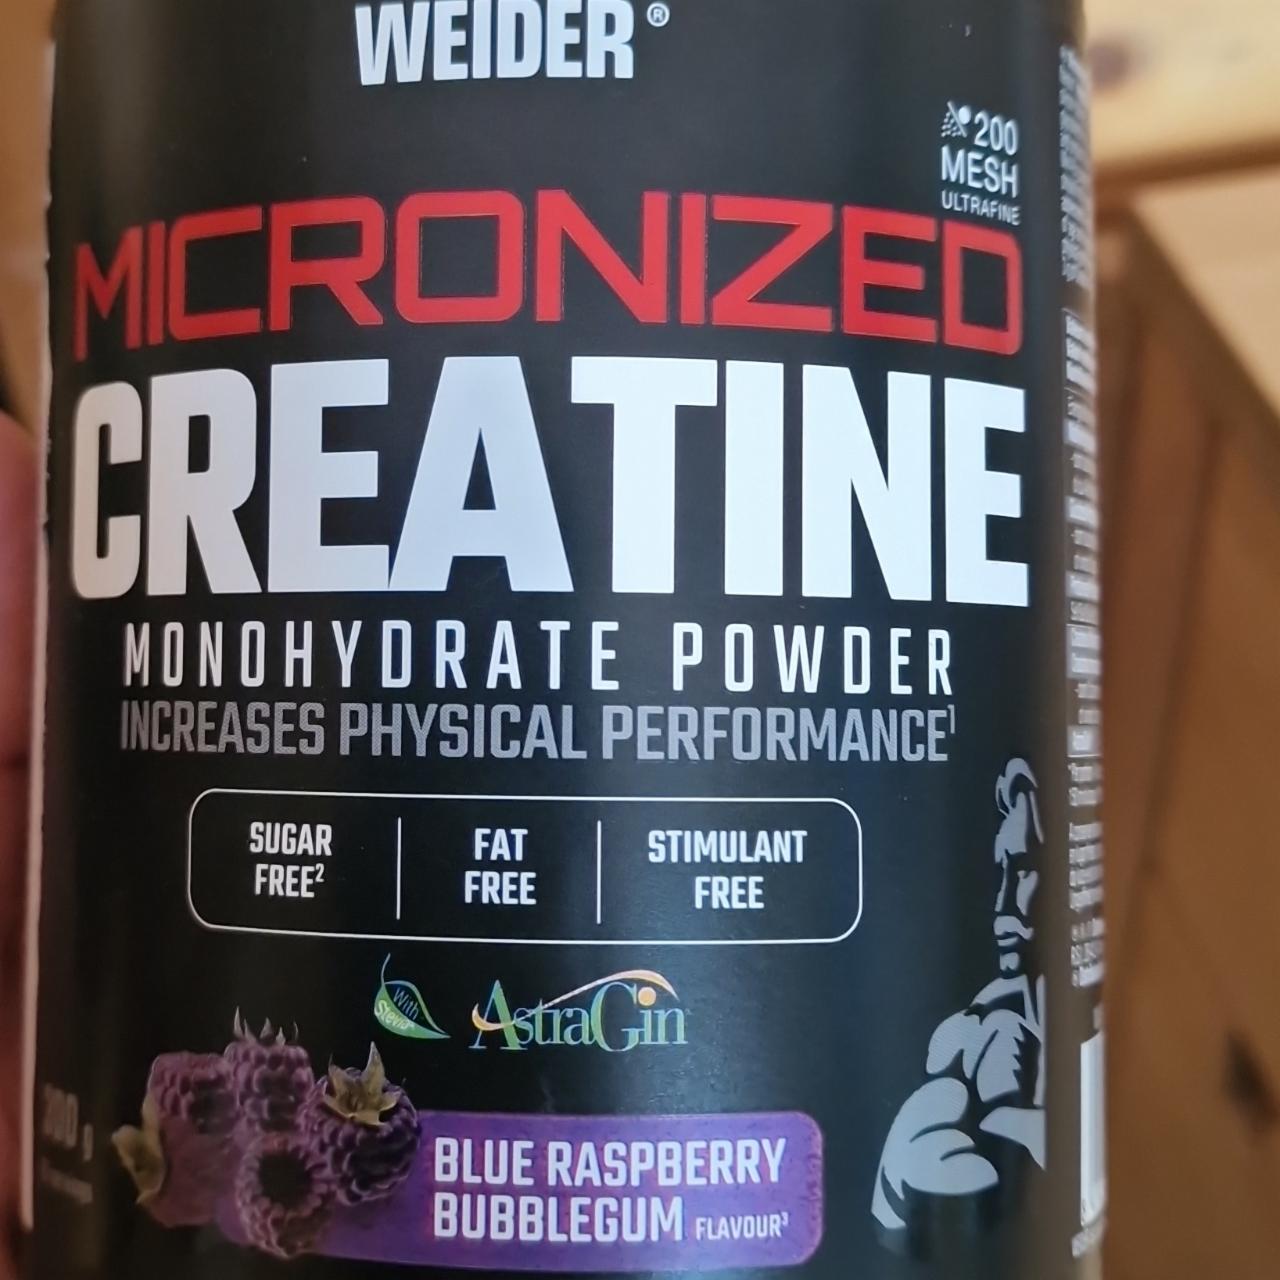 Zdjęcia - Micronized Creatine Monohydrate Powder Blue Raspberry Bubblegum Weider